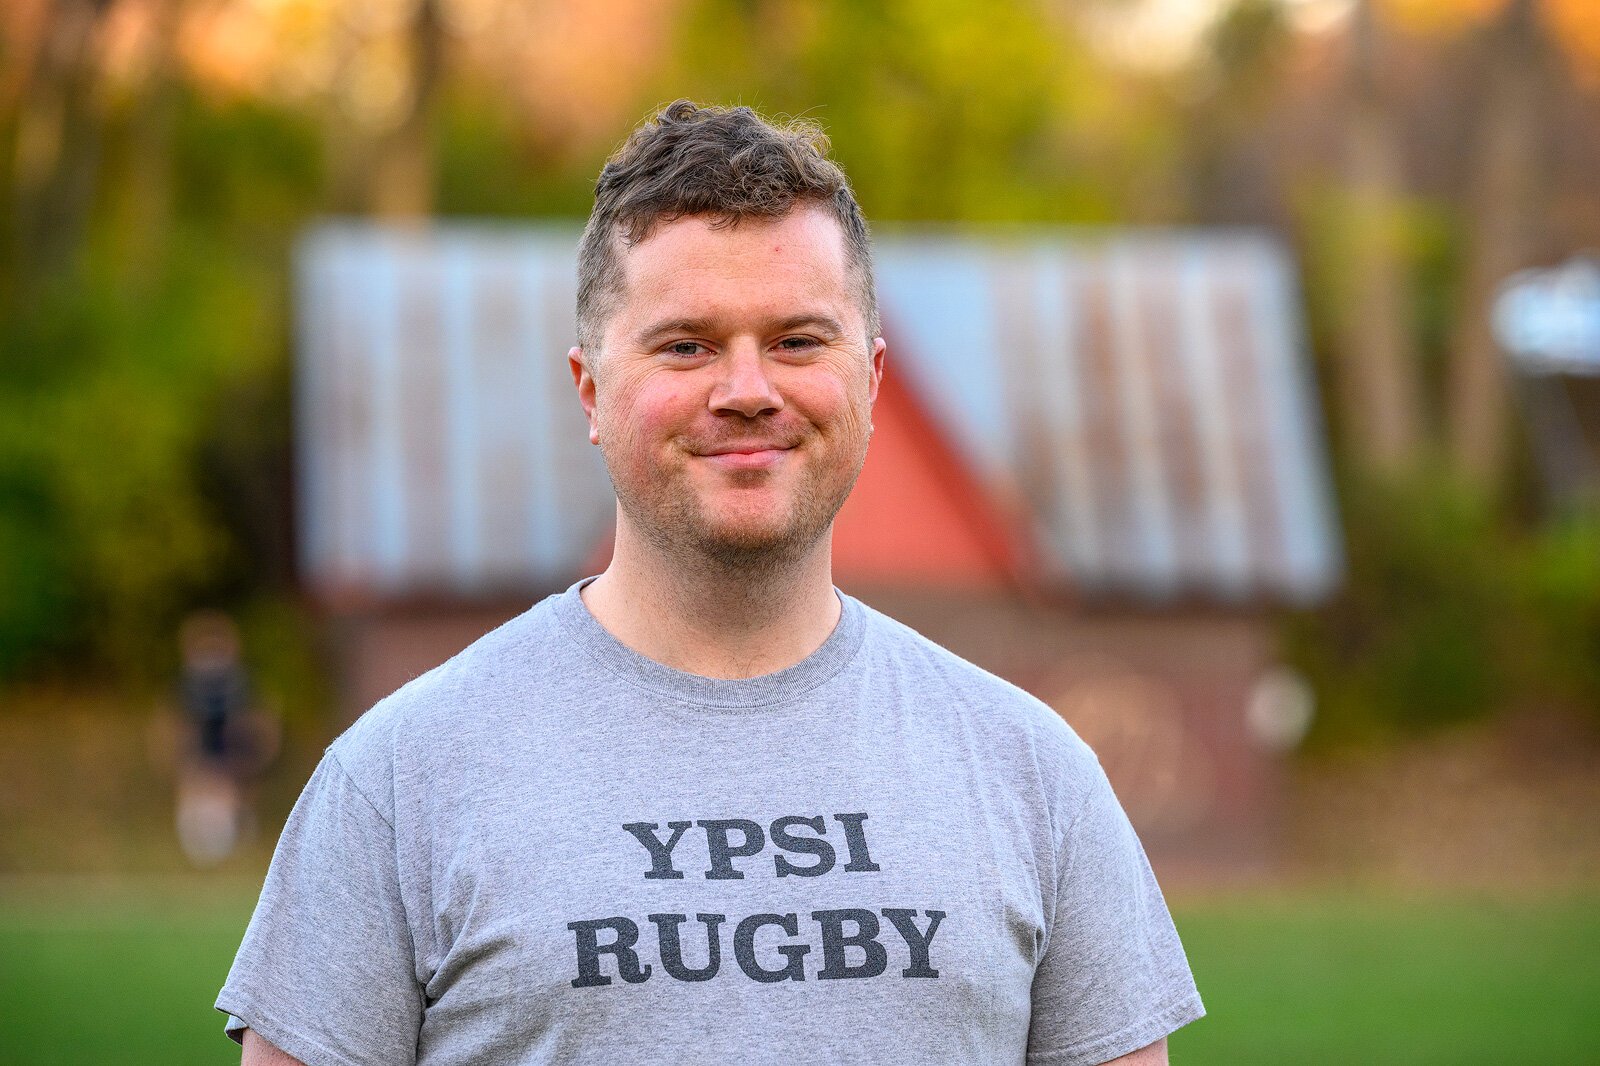 Ypsilanti Rugby Club Director Drew Crosby.